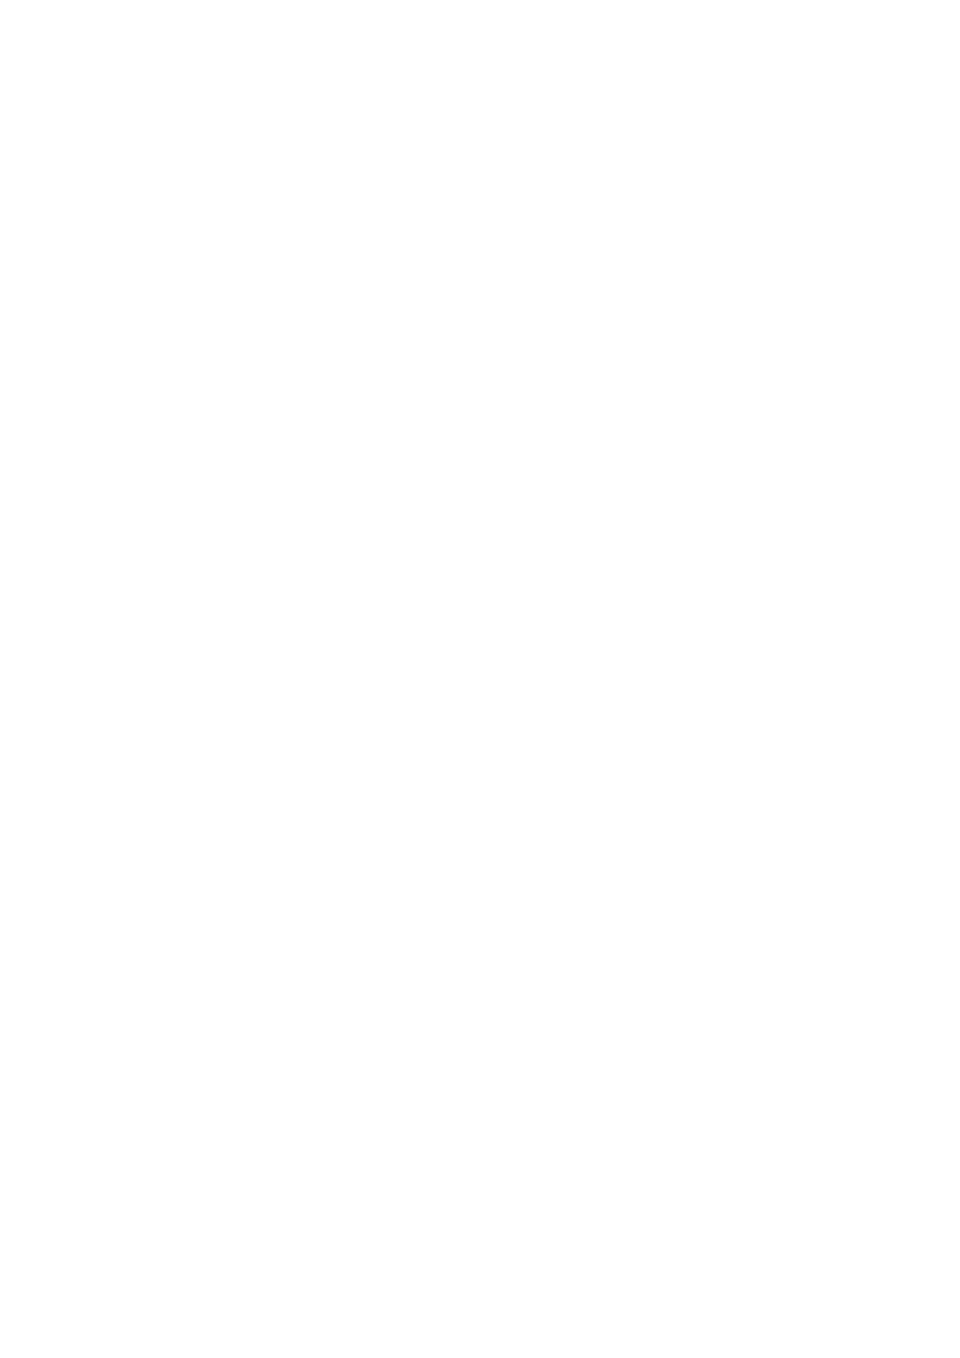 01-01-2016 31-07-2016 5 000,00 Przedmiot umowy: stypendium Burmistrza Miasta Milanówka za wybitne osiągnięcia artystyczne ANEKS W/272/1/OC/1/16 05-01-2016 OCHOTNICZA STRAŻ POŻARNA W MILANÓWKU